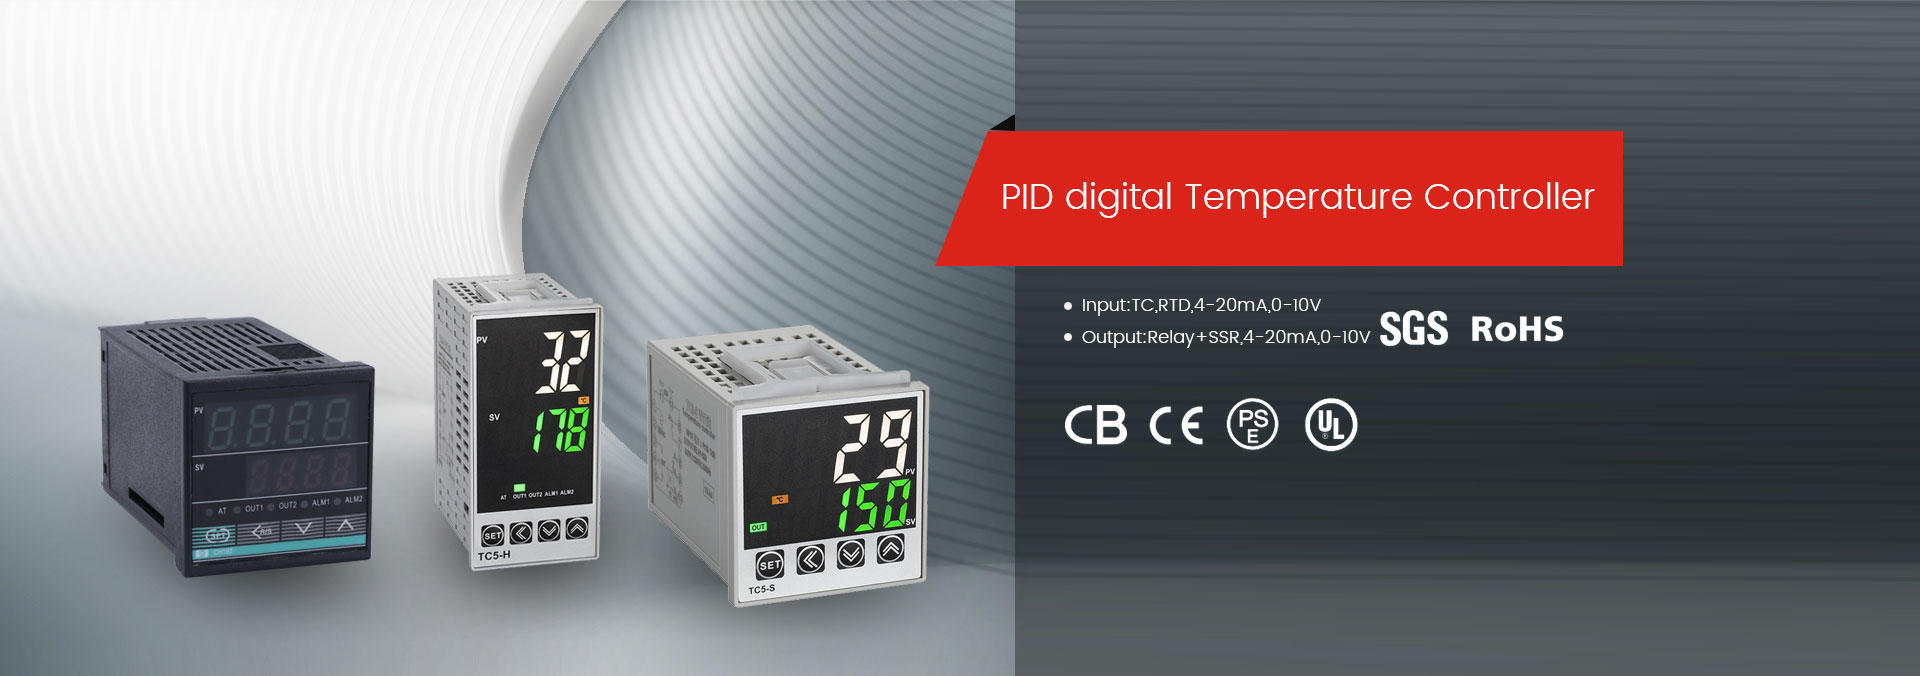 PID digital Temperature Controller